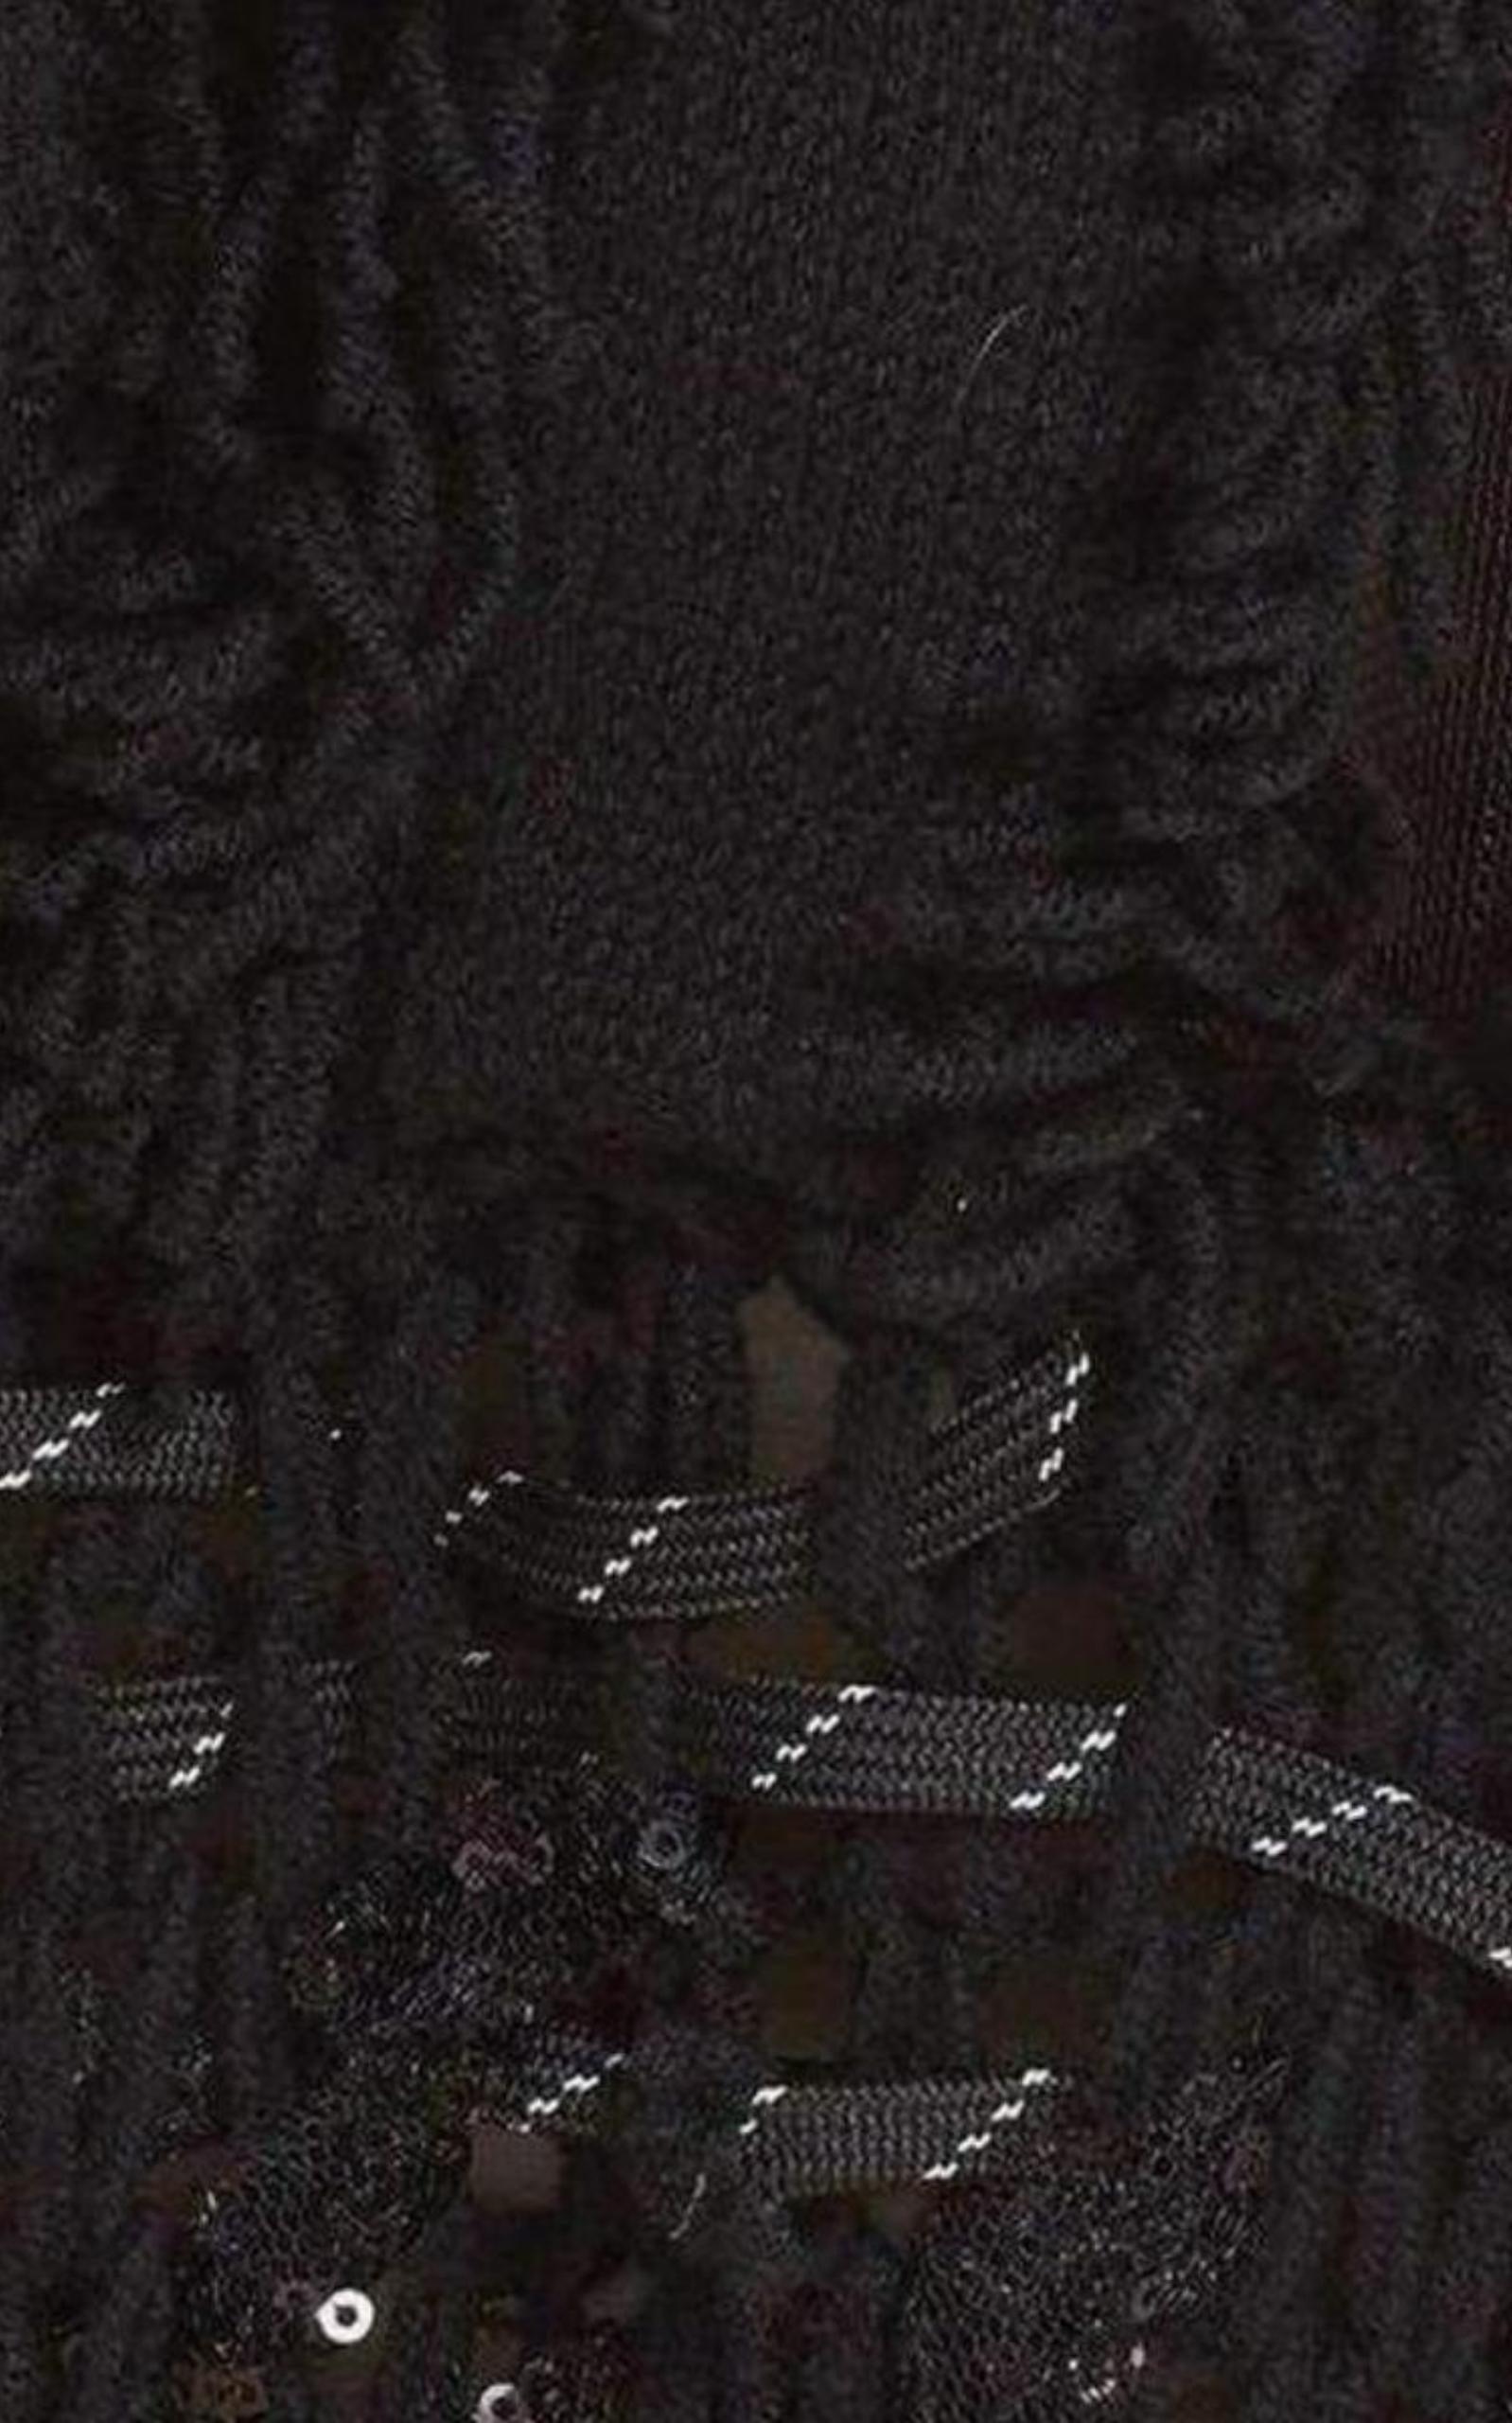  KocheKoché Embellished Open Knit Wool Blend Sweater - Runway Catalog